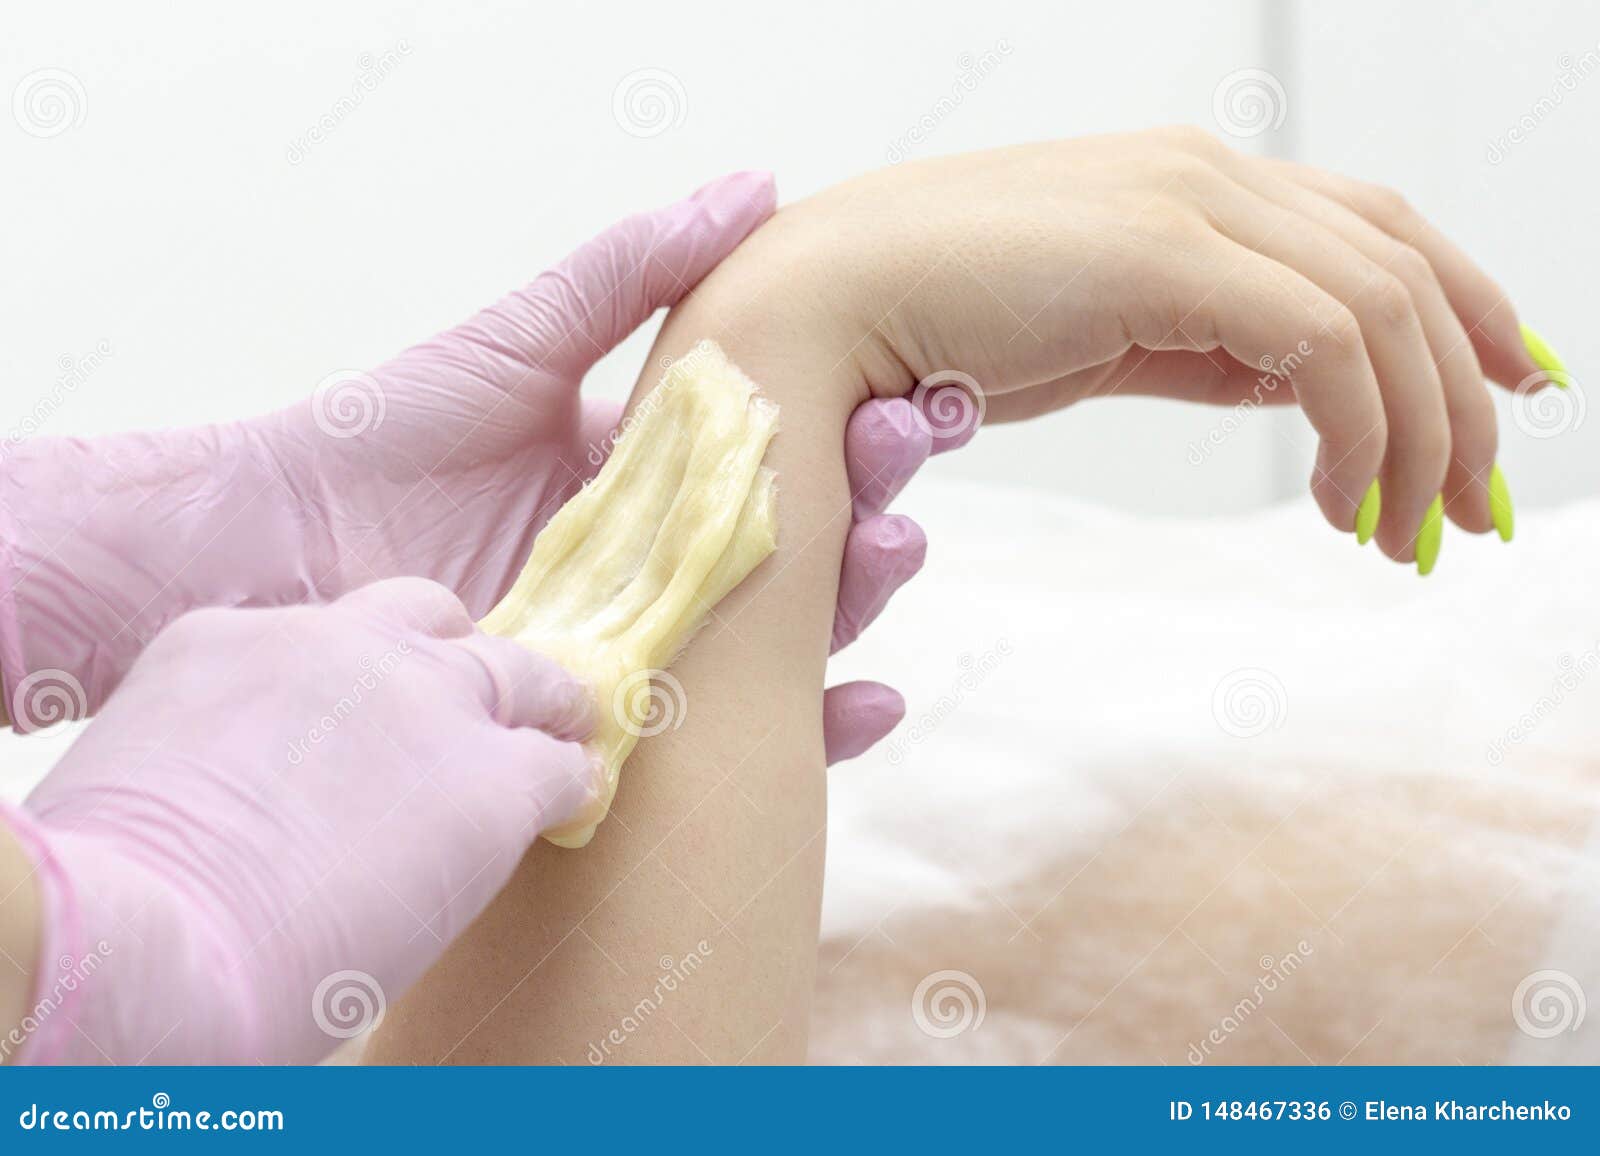 sugar depilation cosmetic procedure applying shugaring paste on skin arm